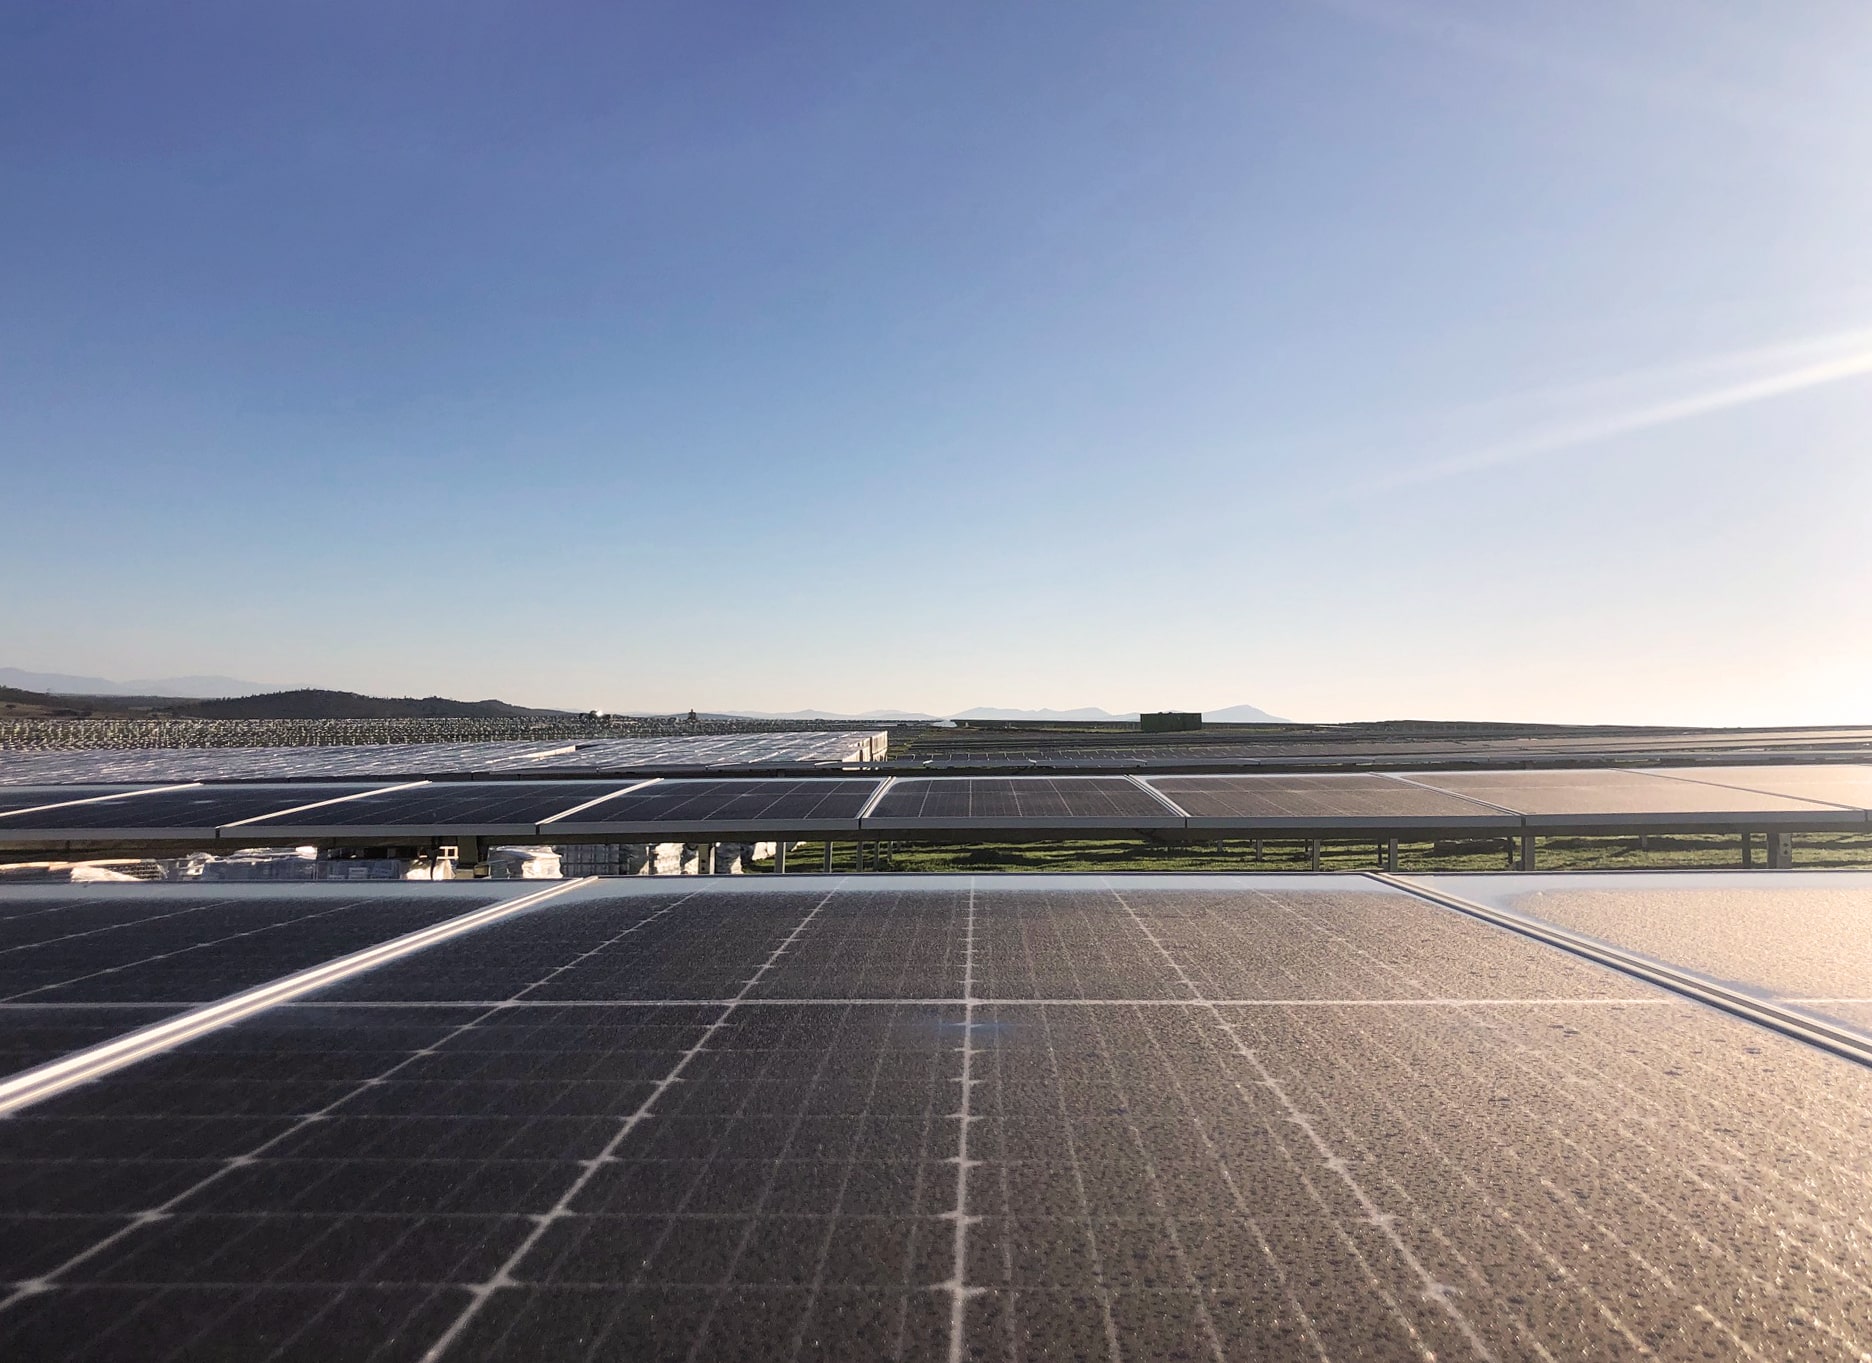 Instalaciones fotovoltaicas - Zaragoza 2012 empresa de energías renovables